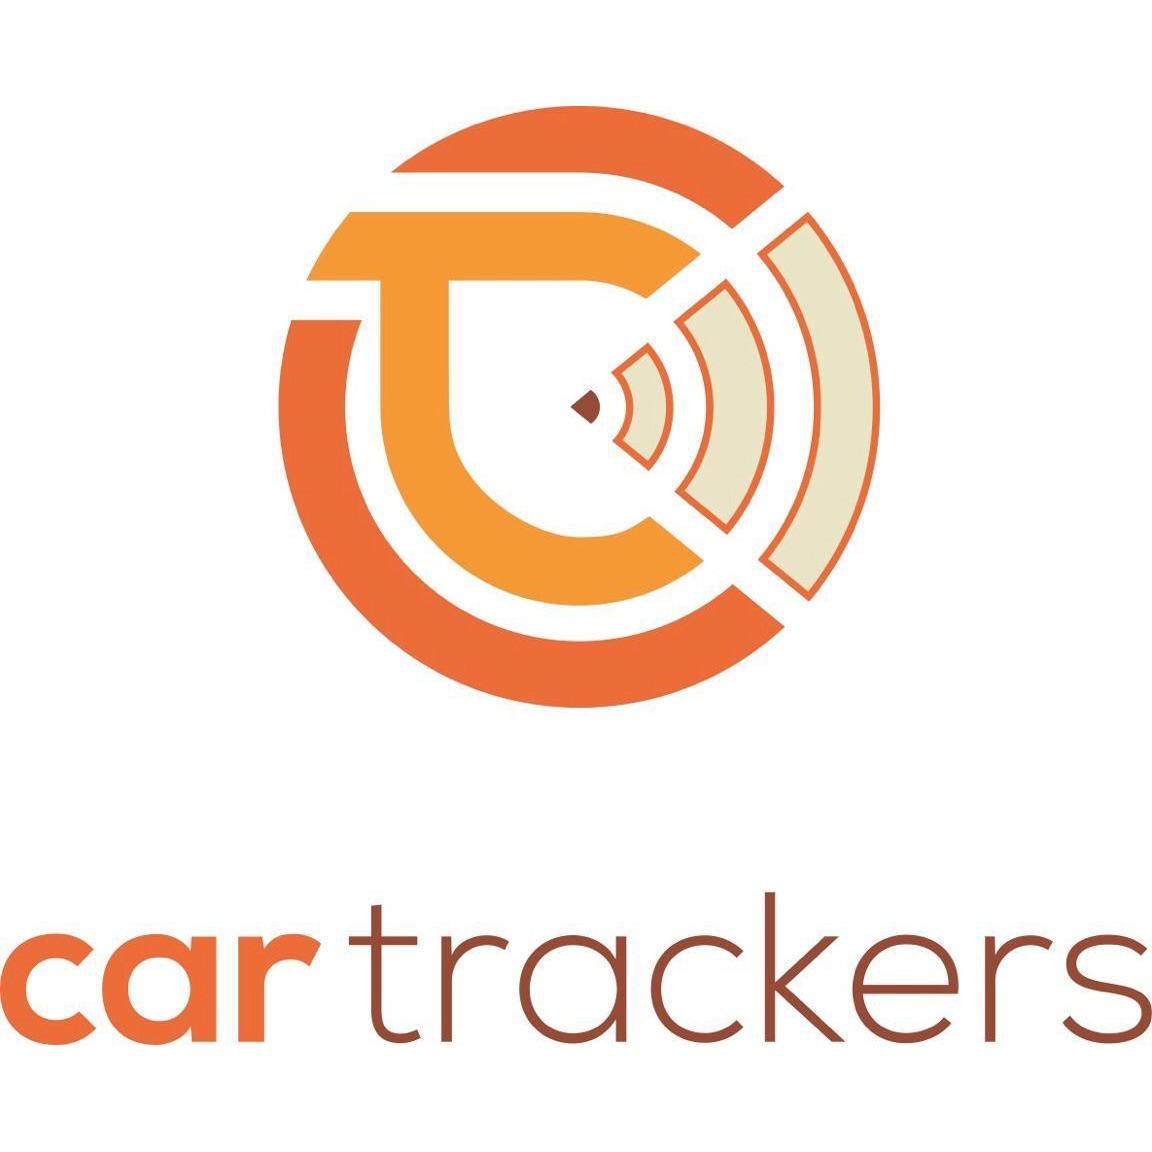 Car Trackers - Anaheim, CA 92806 - (714)699-9899 | ShowMeLocal.com